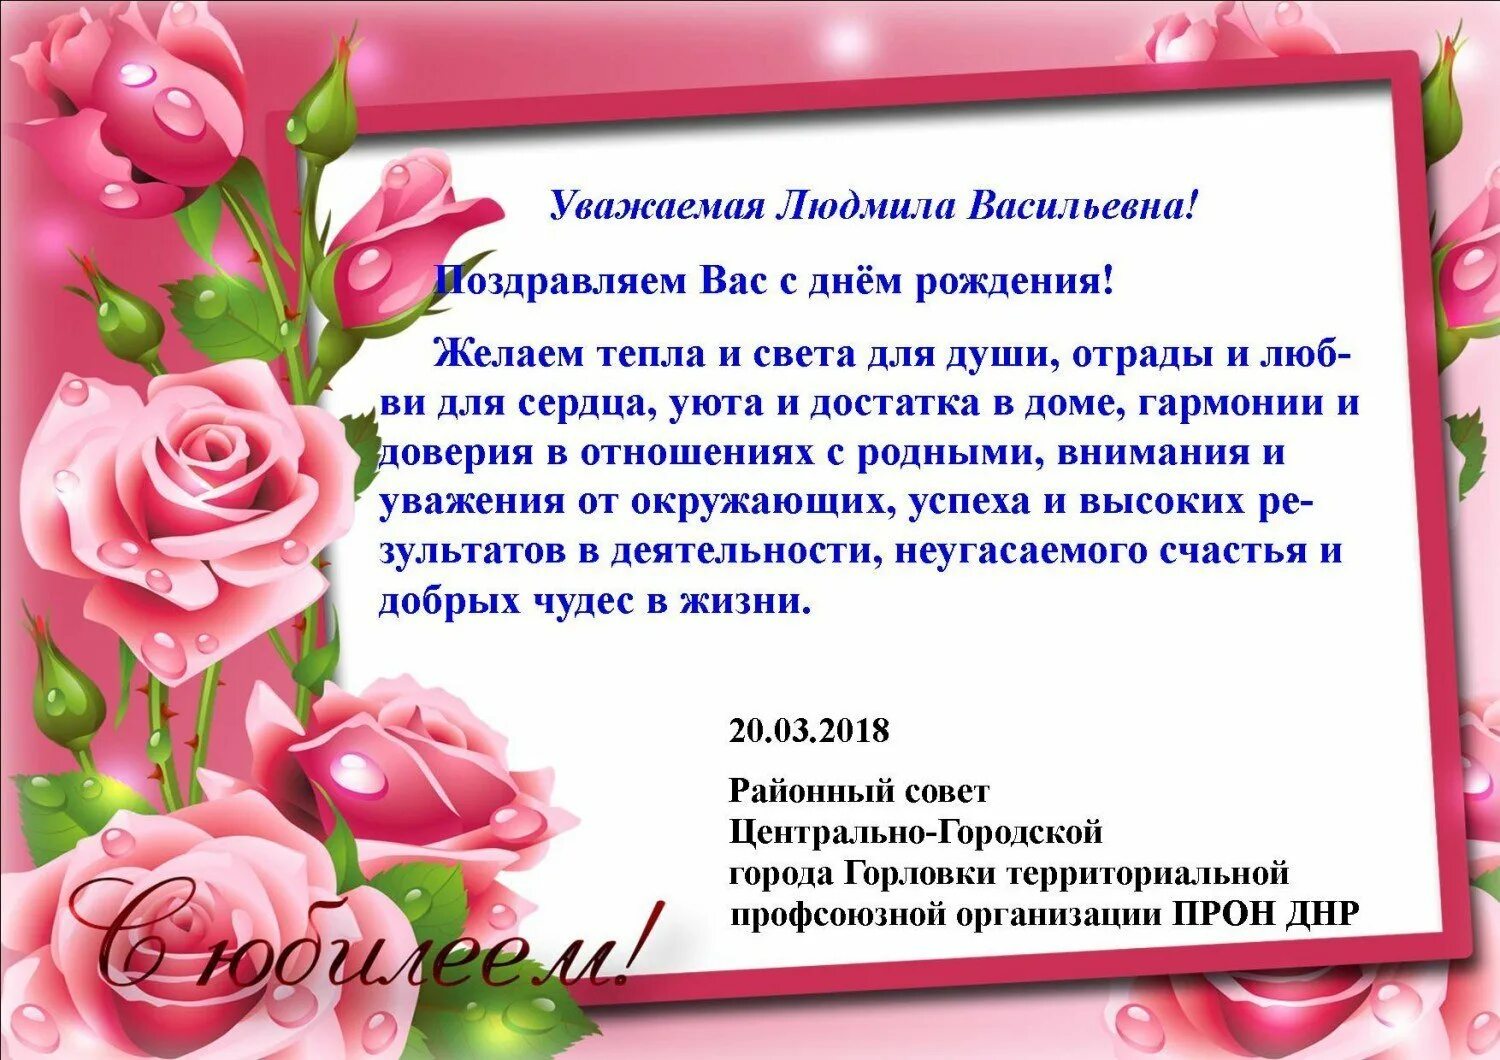 Др уважаемый. Поздравление с днём рождения Людмиле Васильевне.